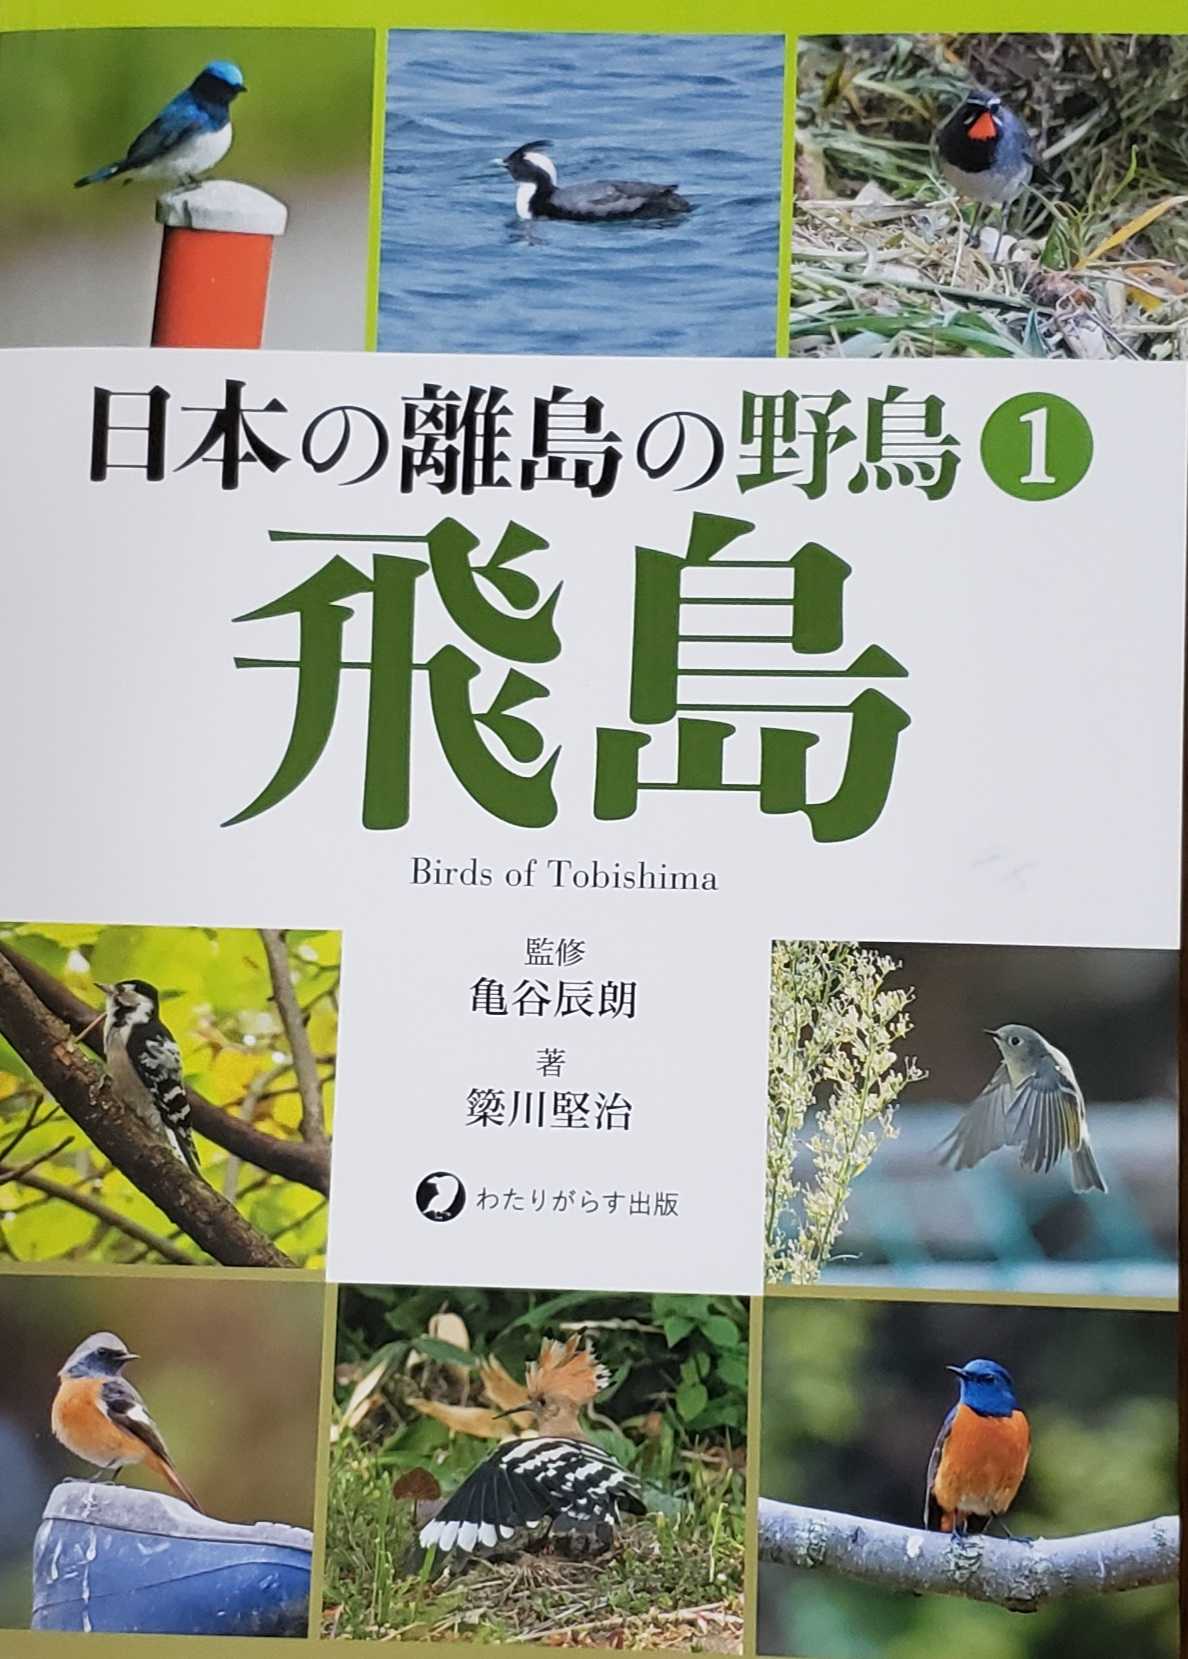 鳥の本 日本の離島の野鳥 飛島 まみきびのブログ 楽天ブログ